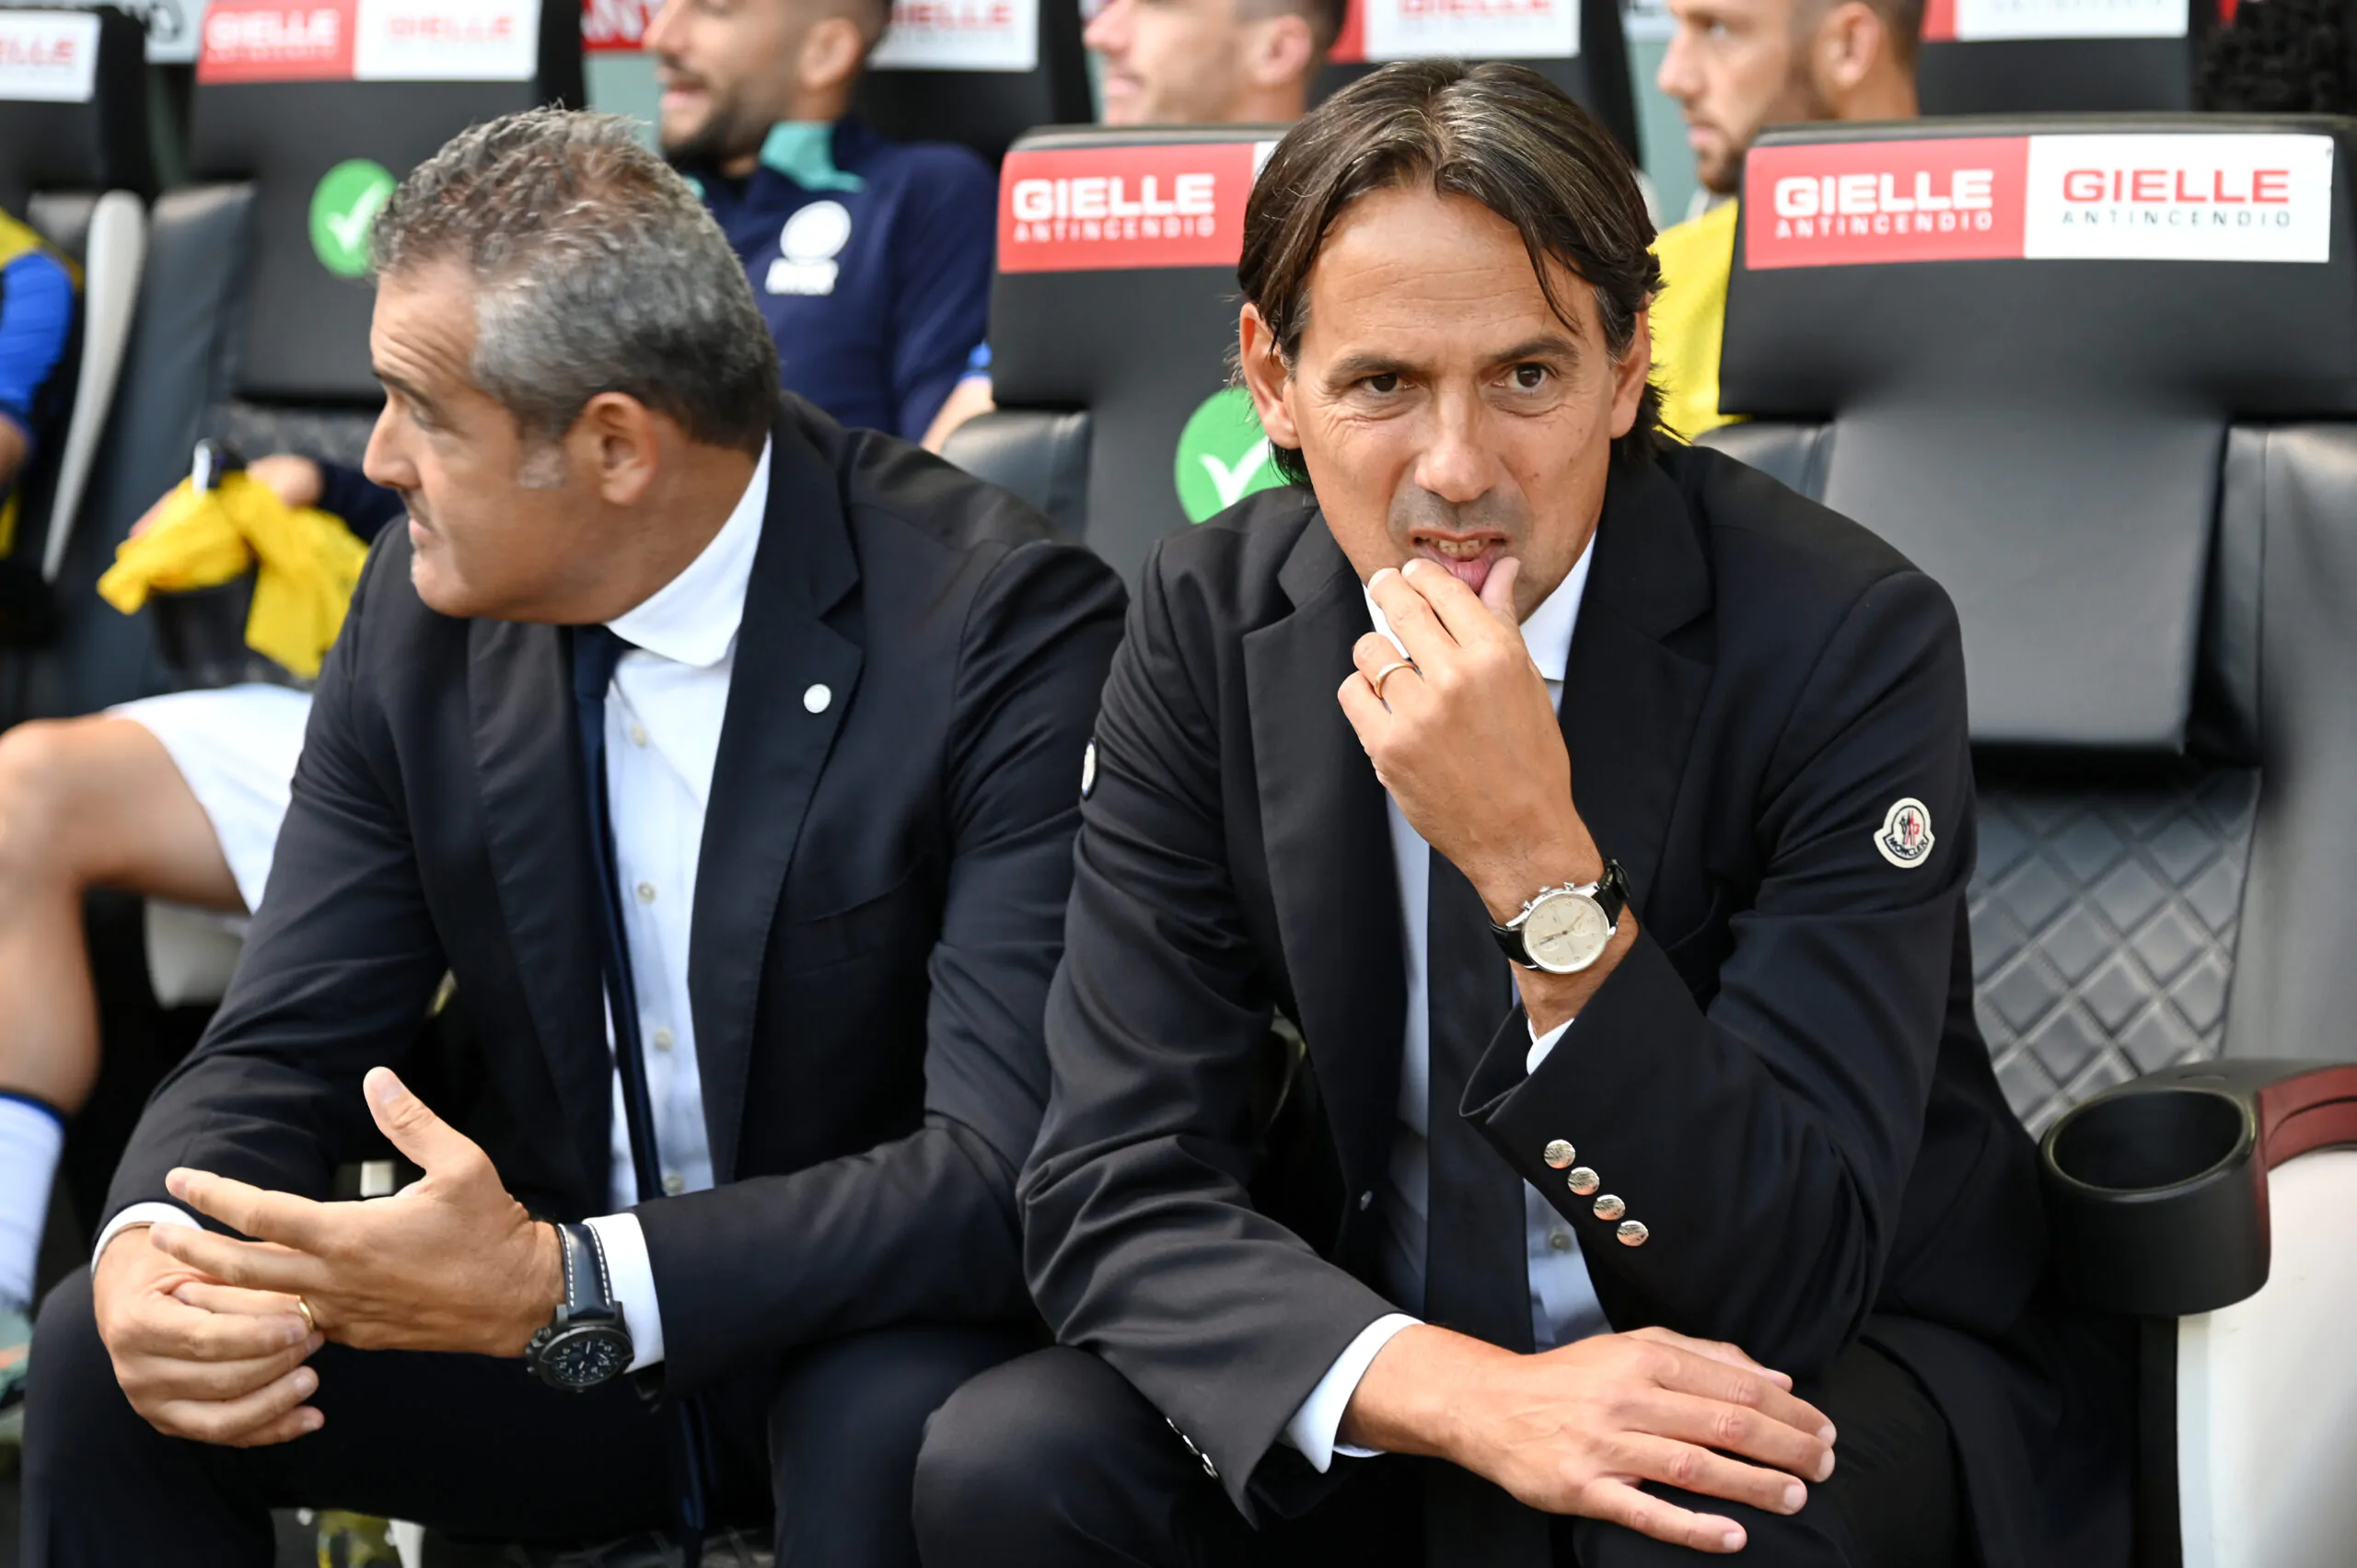 Rivelazione in diretta sul futuro di Inzaghi: “Può succedere nelle prossime partite”